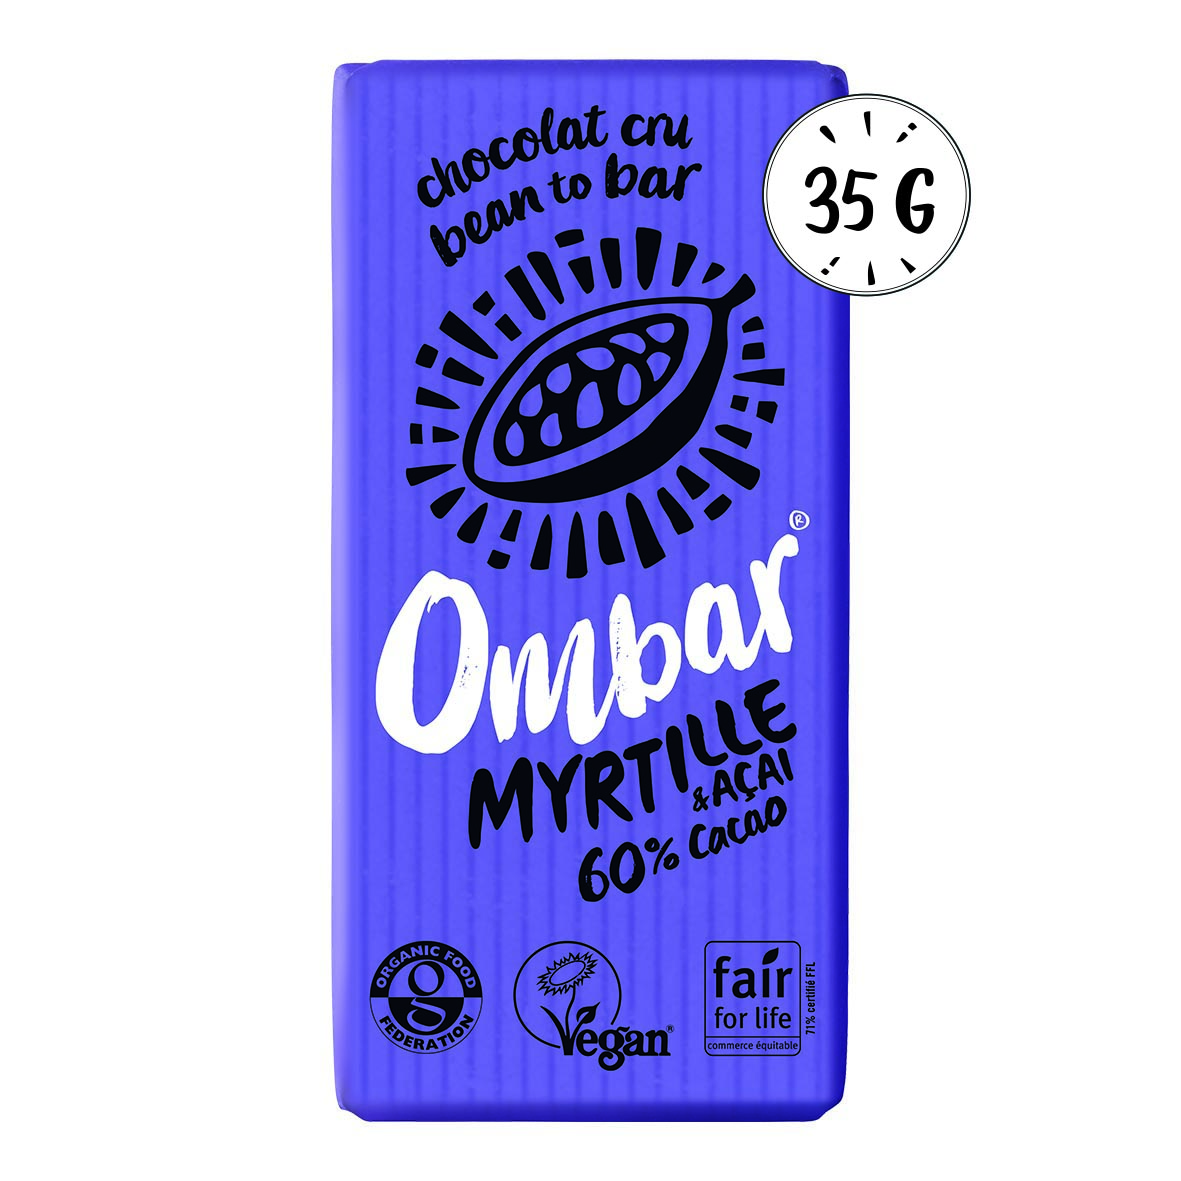 Chocolat CRU myrtille-açai 35g